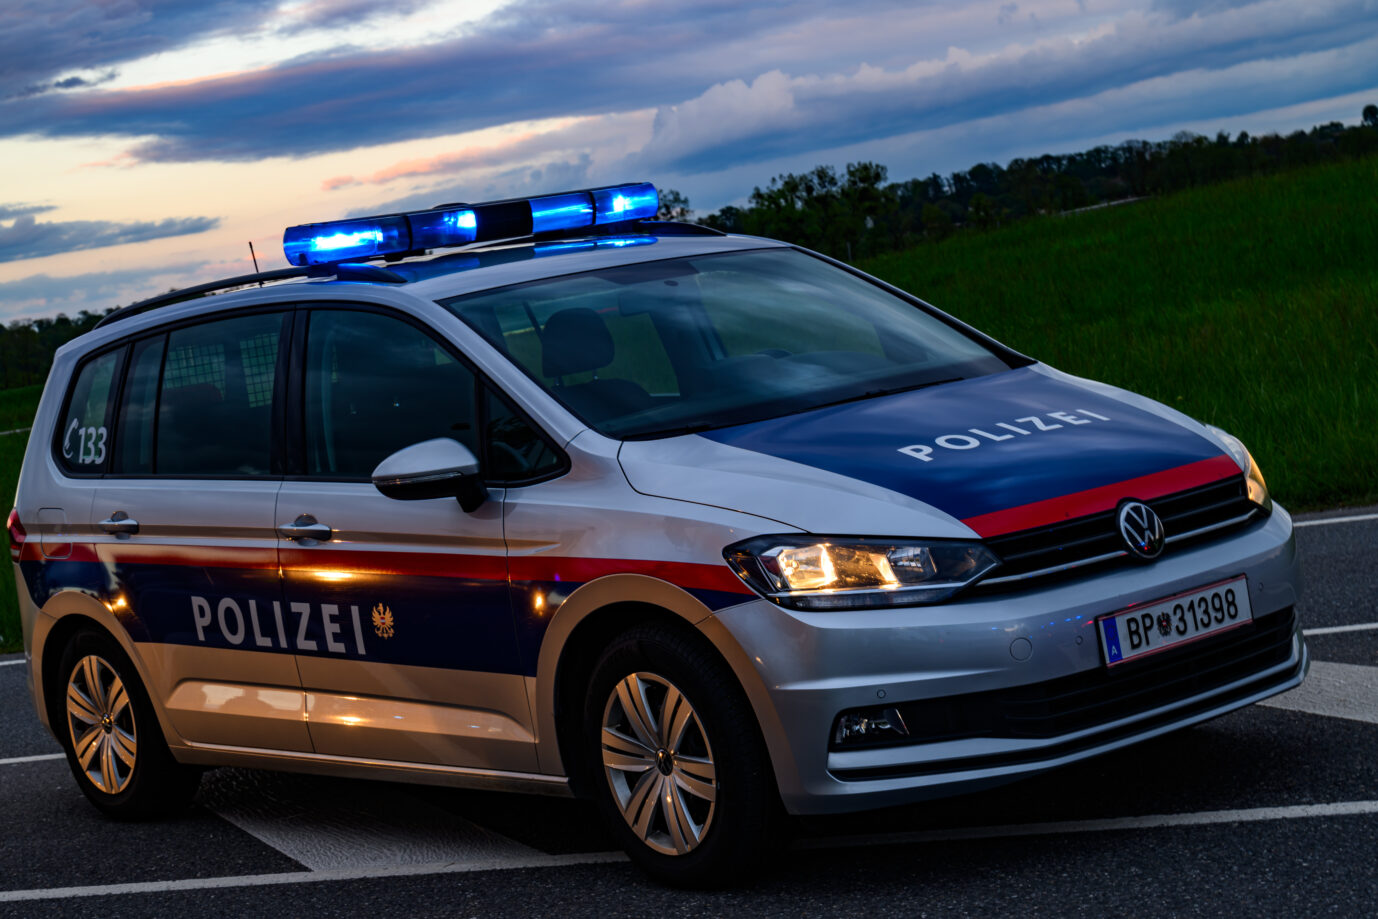 Ein Polizeifahrzeug der österreichischen Polizei steht einsatzbereit an der Straßenseite. Die Dämmerung setzt ein, während die Blaulichter des Fahrzeugs hell in den frühen Abendhimmel strahlen und die Umgebung in ein weiches Licht tauchen. In Niederösterreich hat ein Afghane schwere Straftaten begangen. - 20240421_PD18121